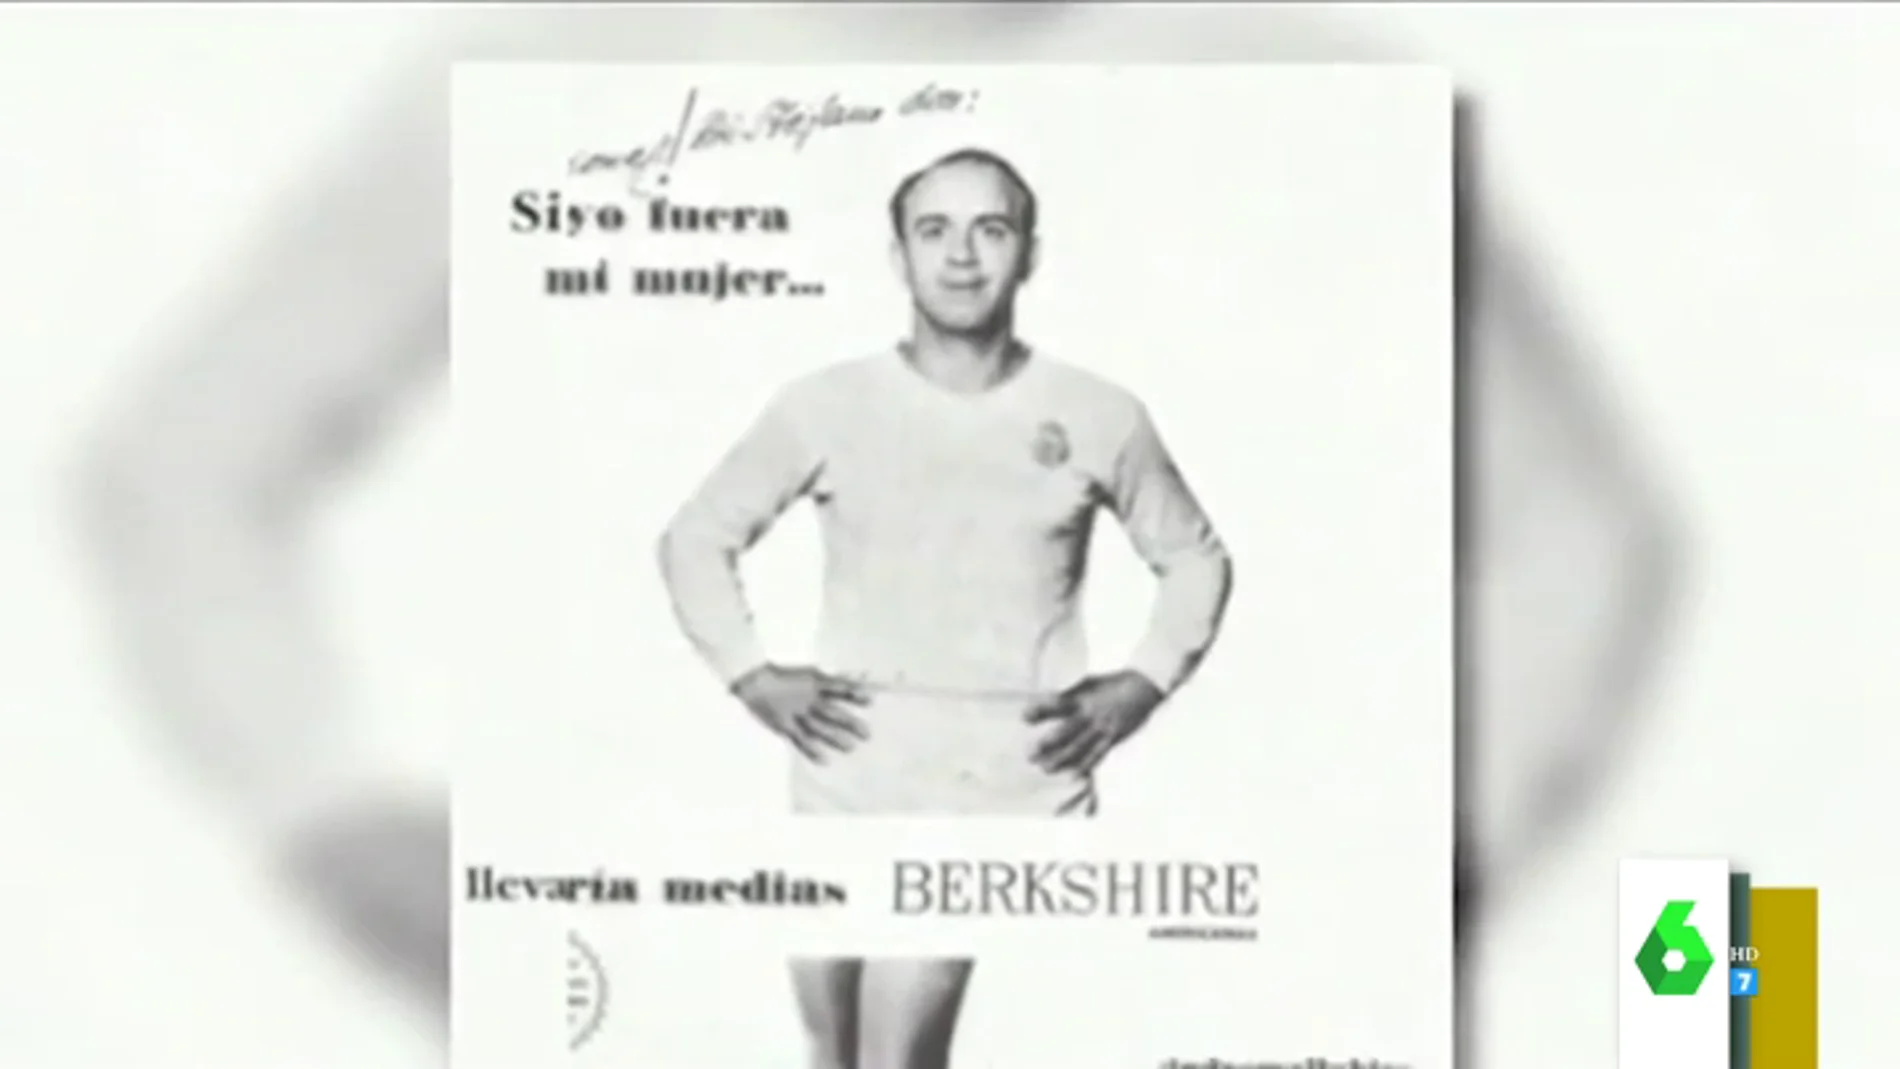 El anuncio de Alfredo Di Stéfano promocionando medias de mujer